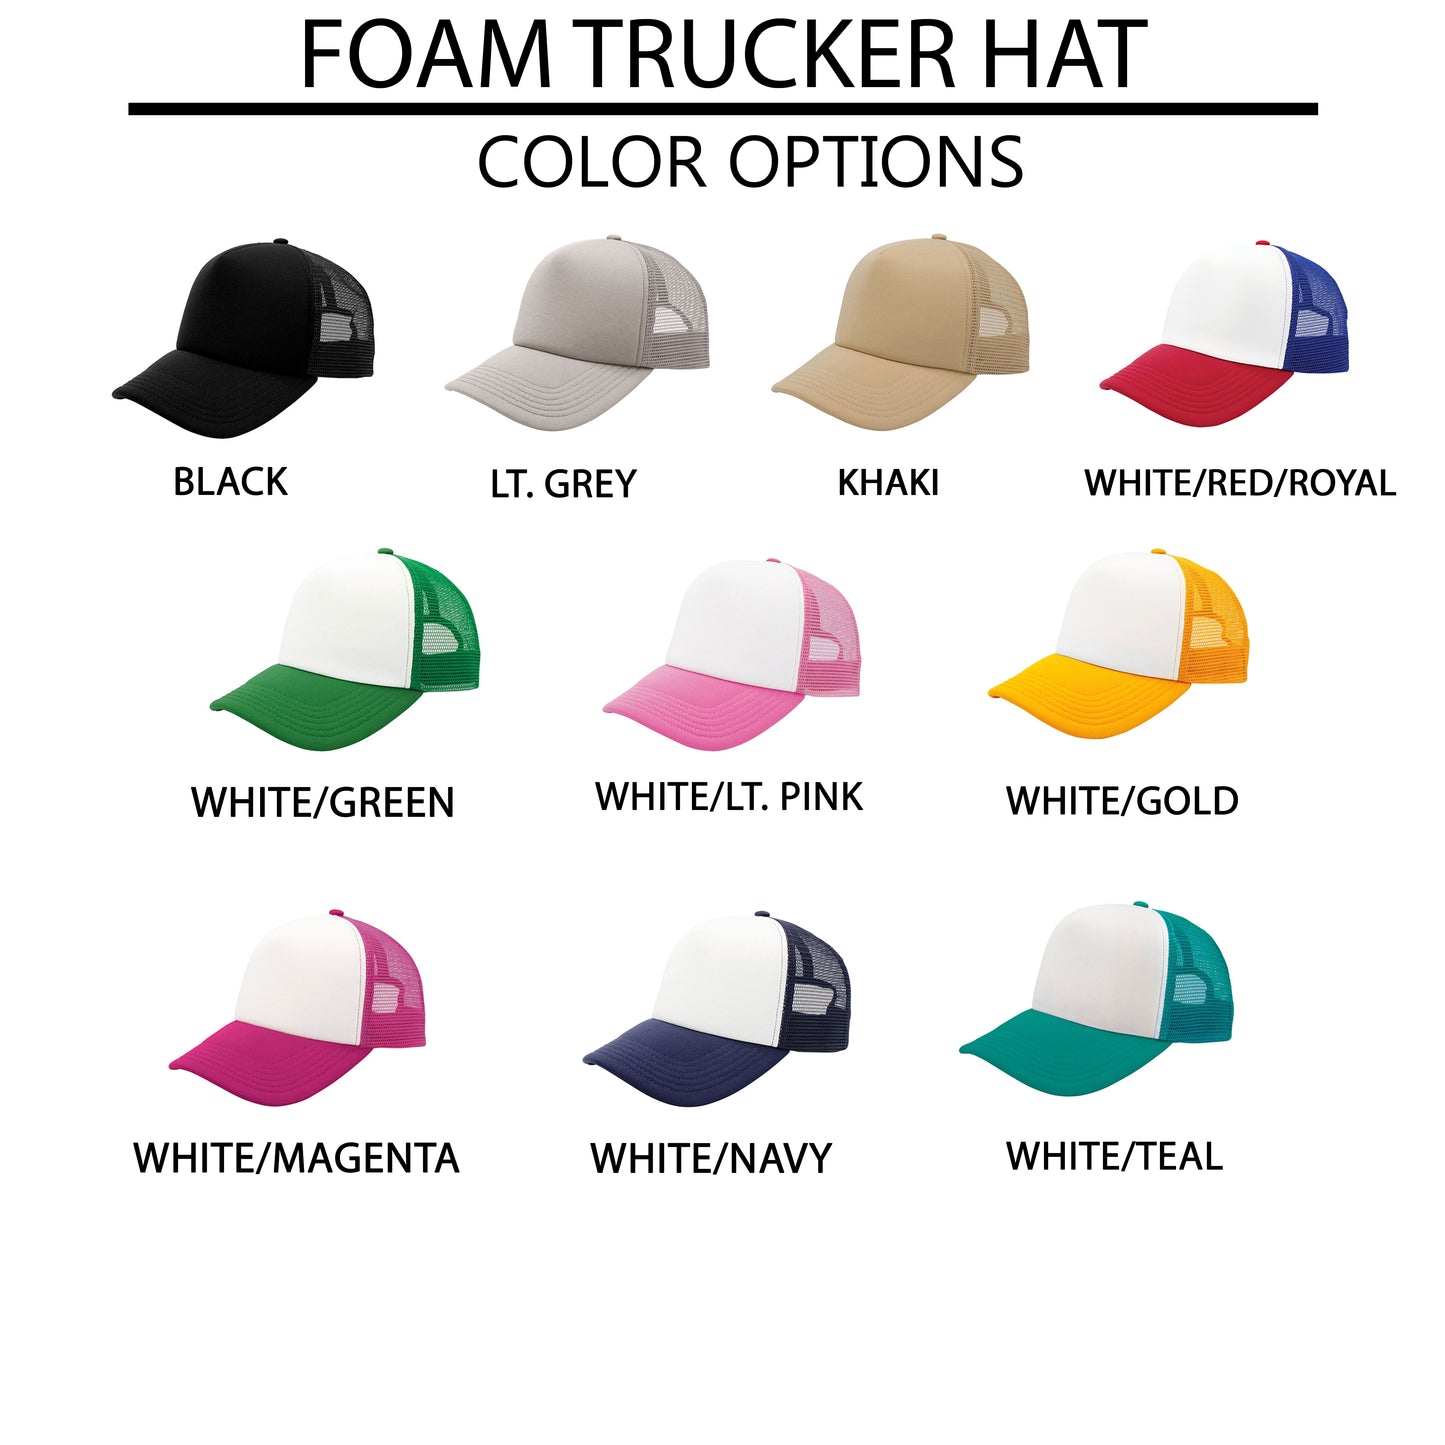 Made Worthy Heart | Foam Trucker Hat